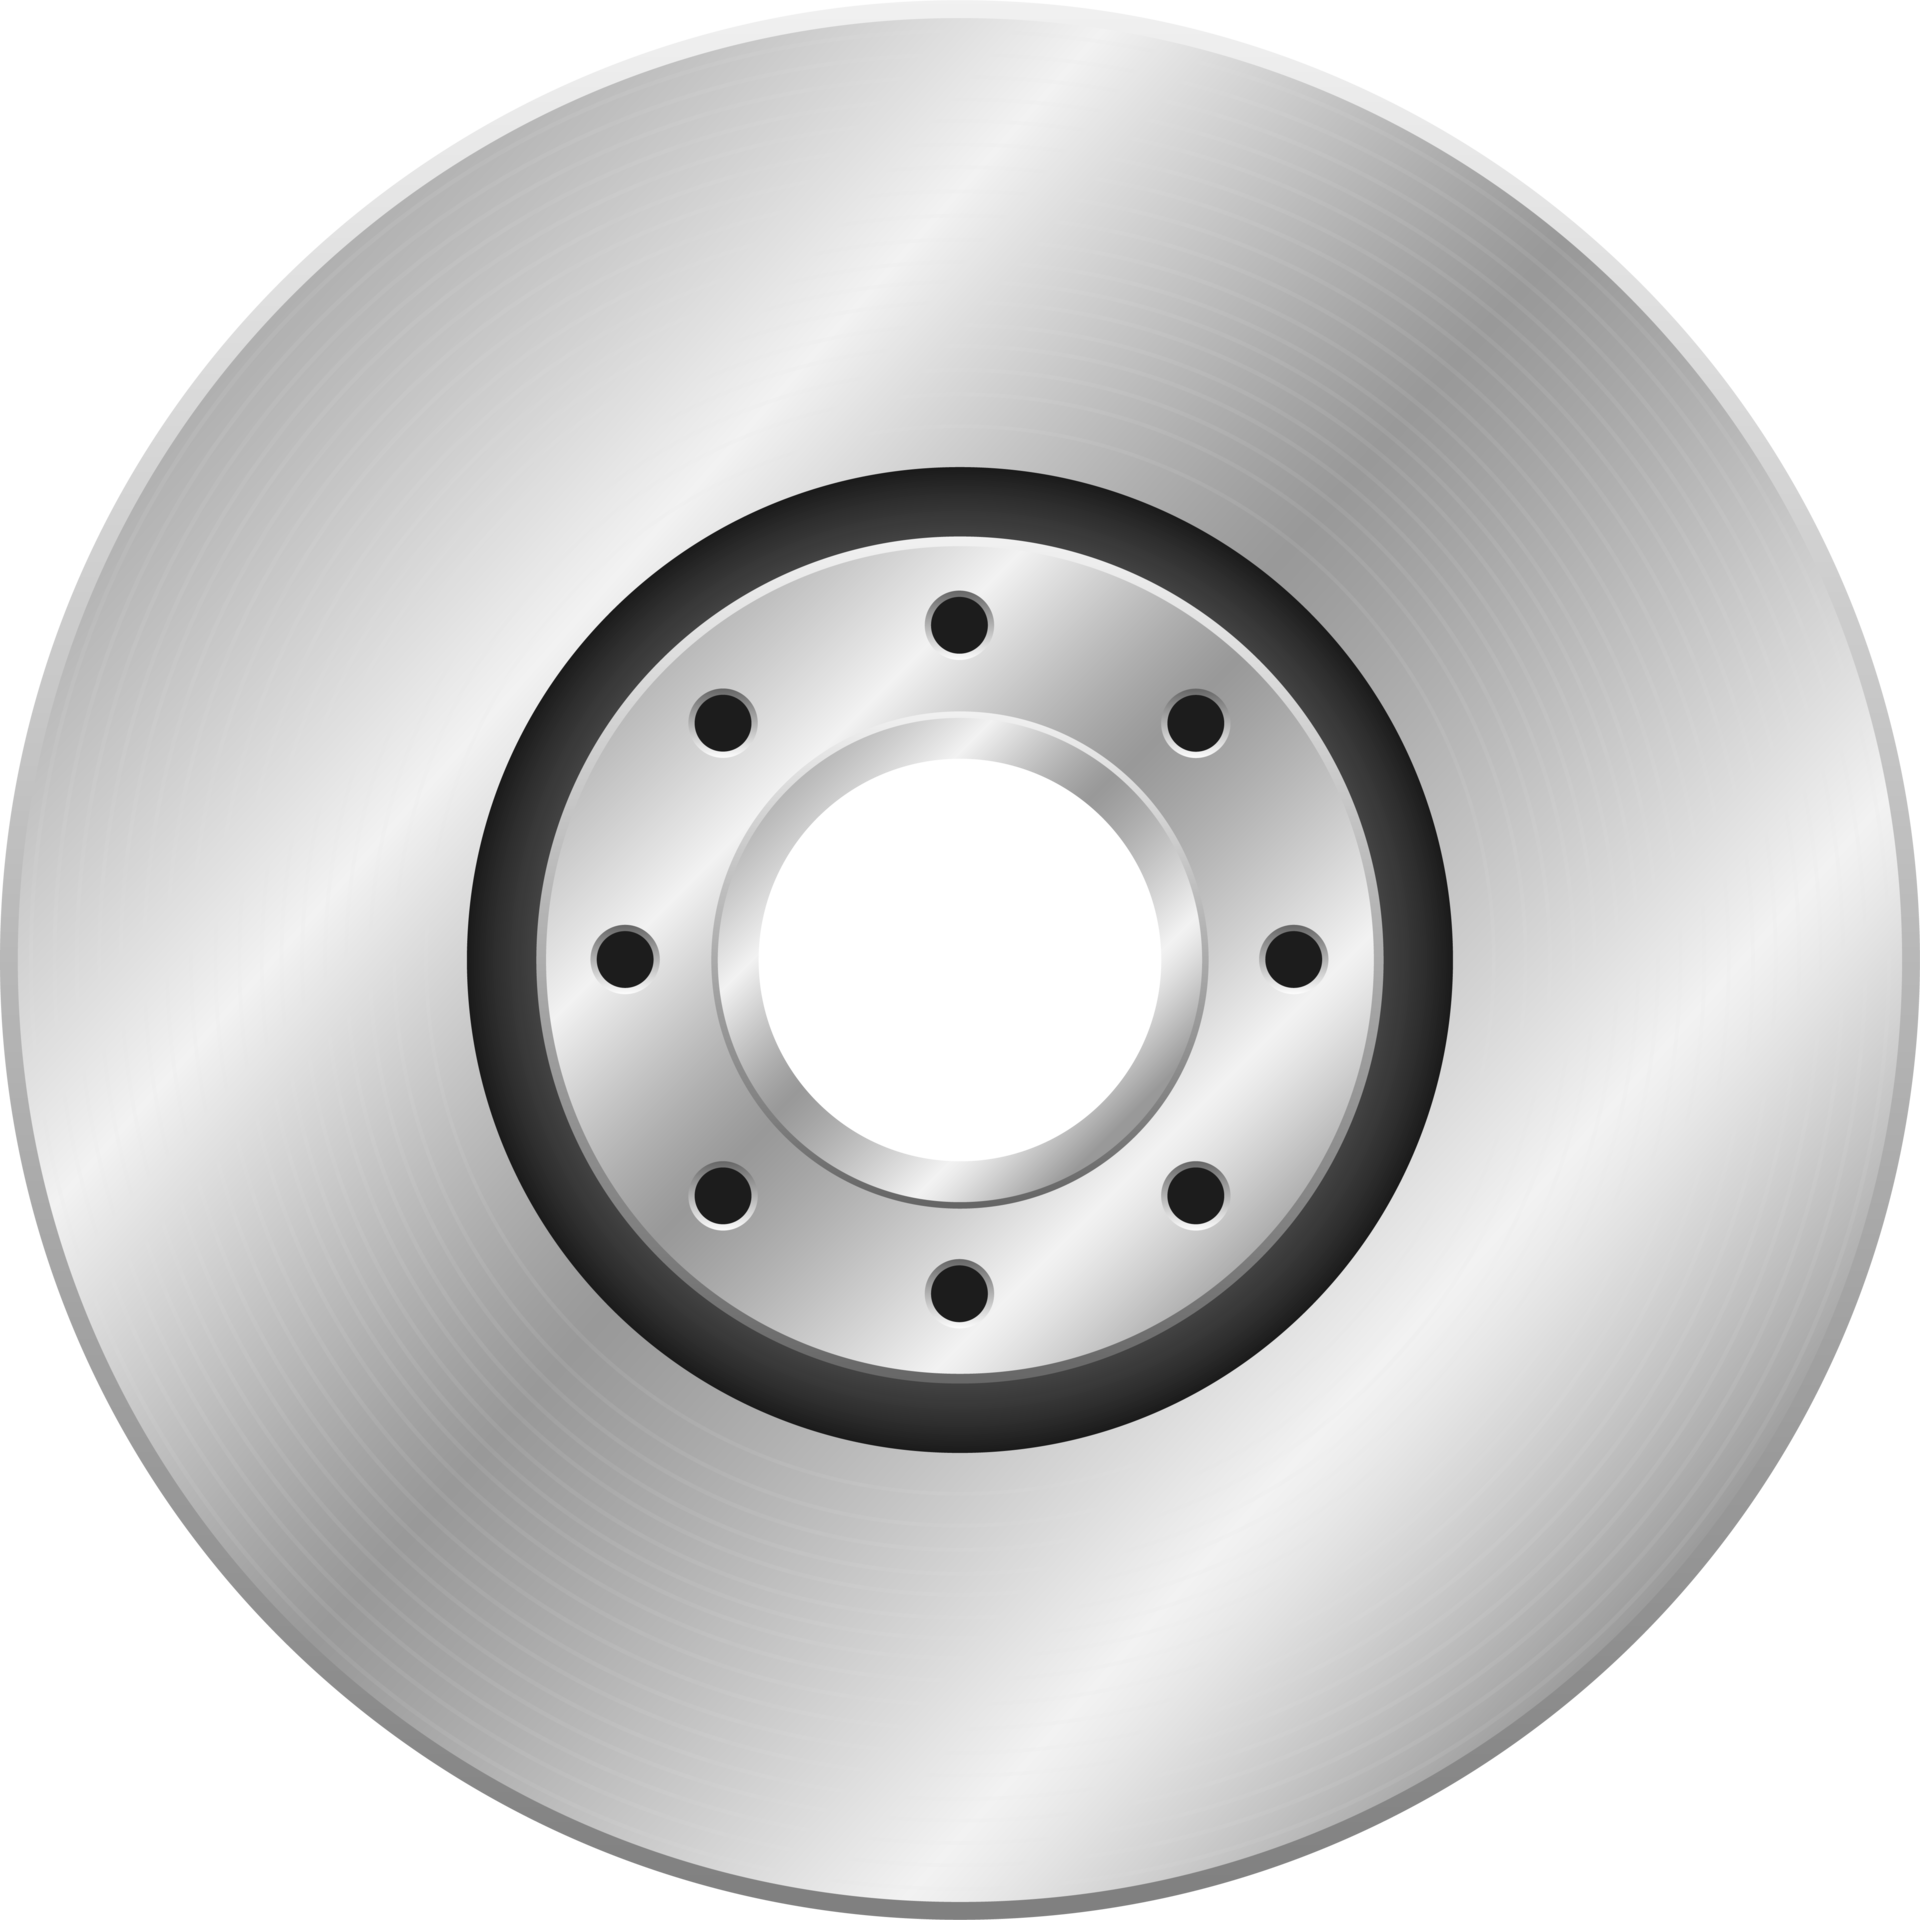 Brake disk clipart design illustration 9342129 PNG